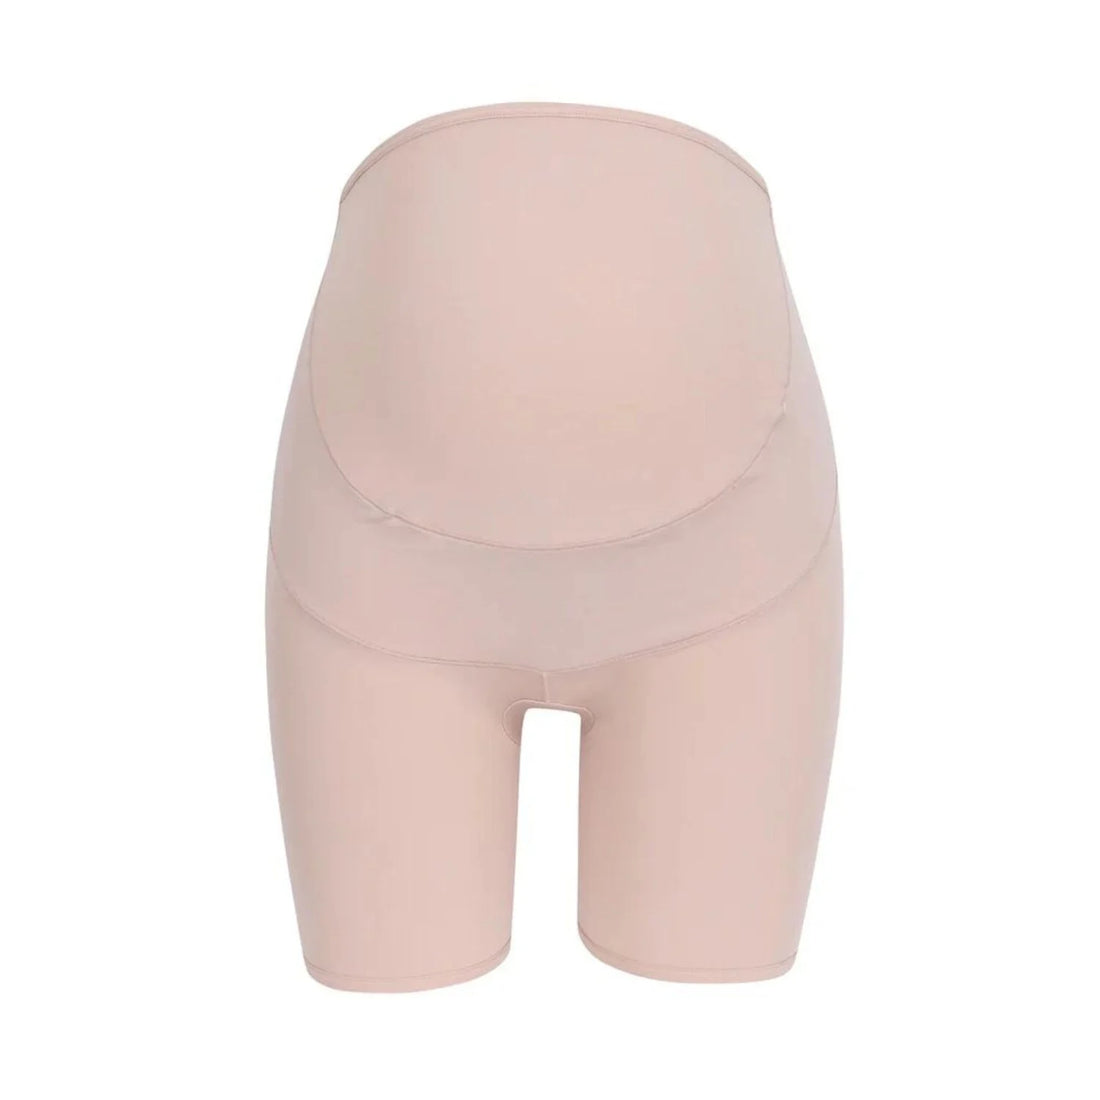 Wacoal Maternity Panty Full Body Shaper Model WM6180 Beige (BE)